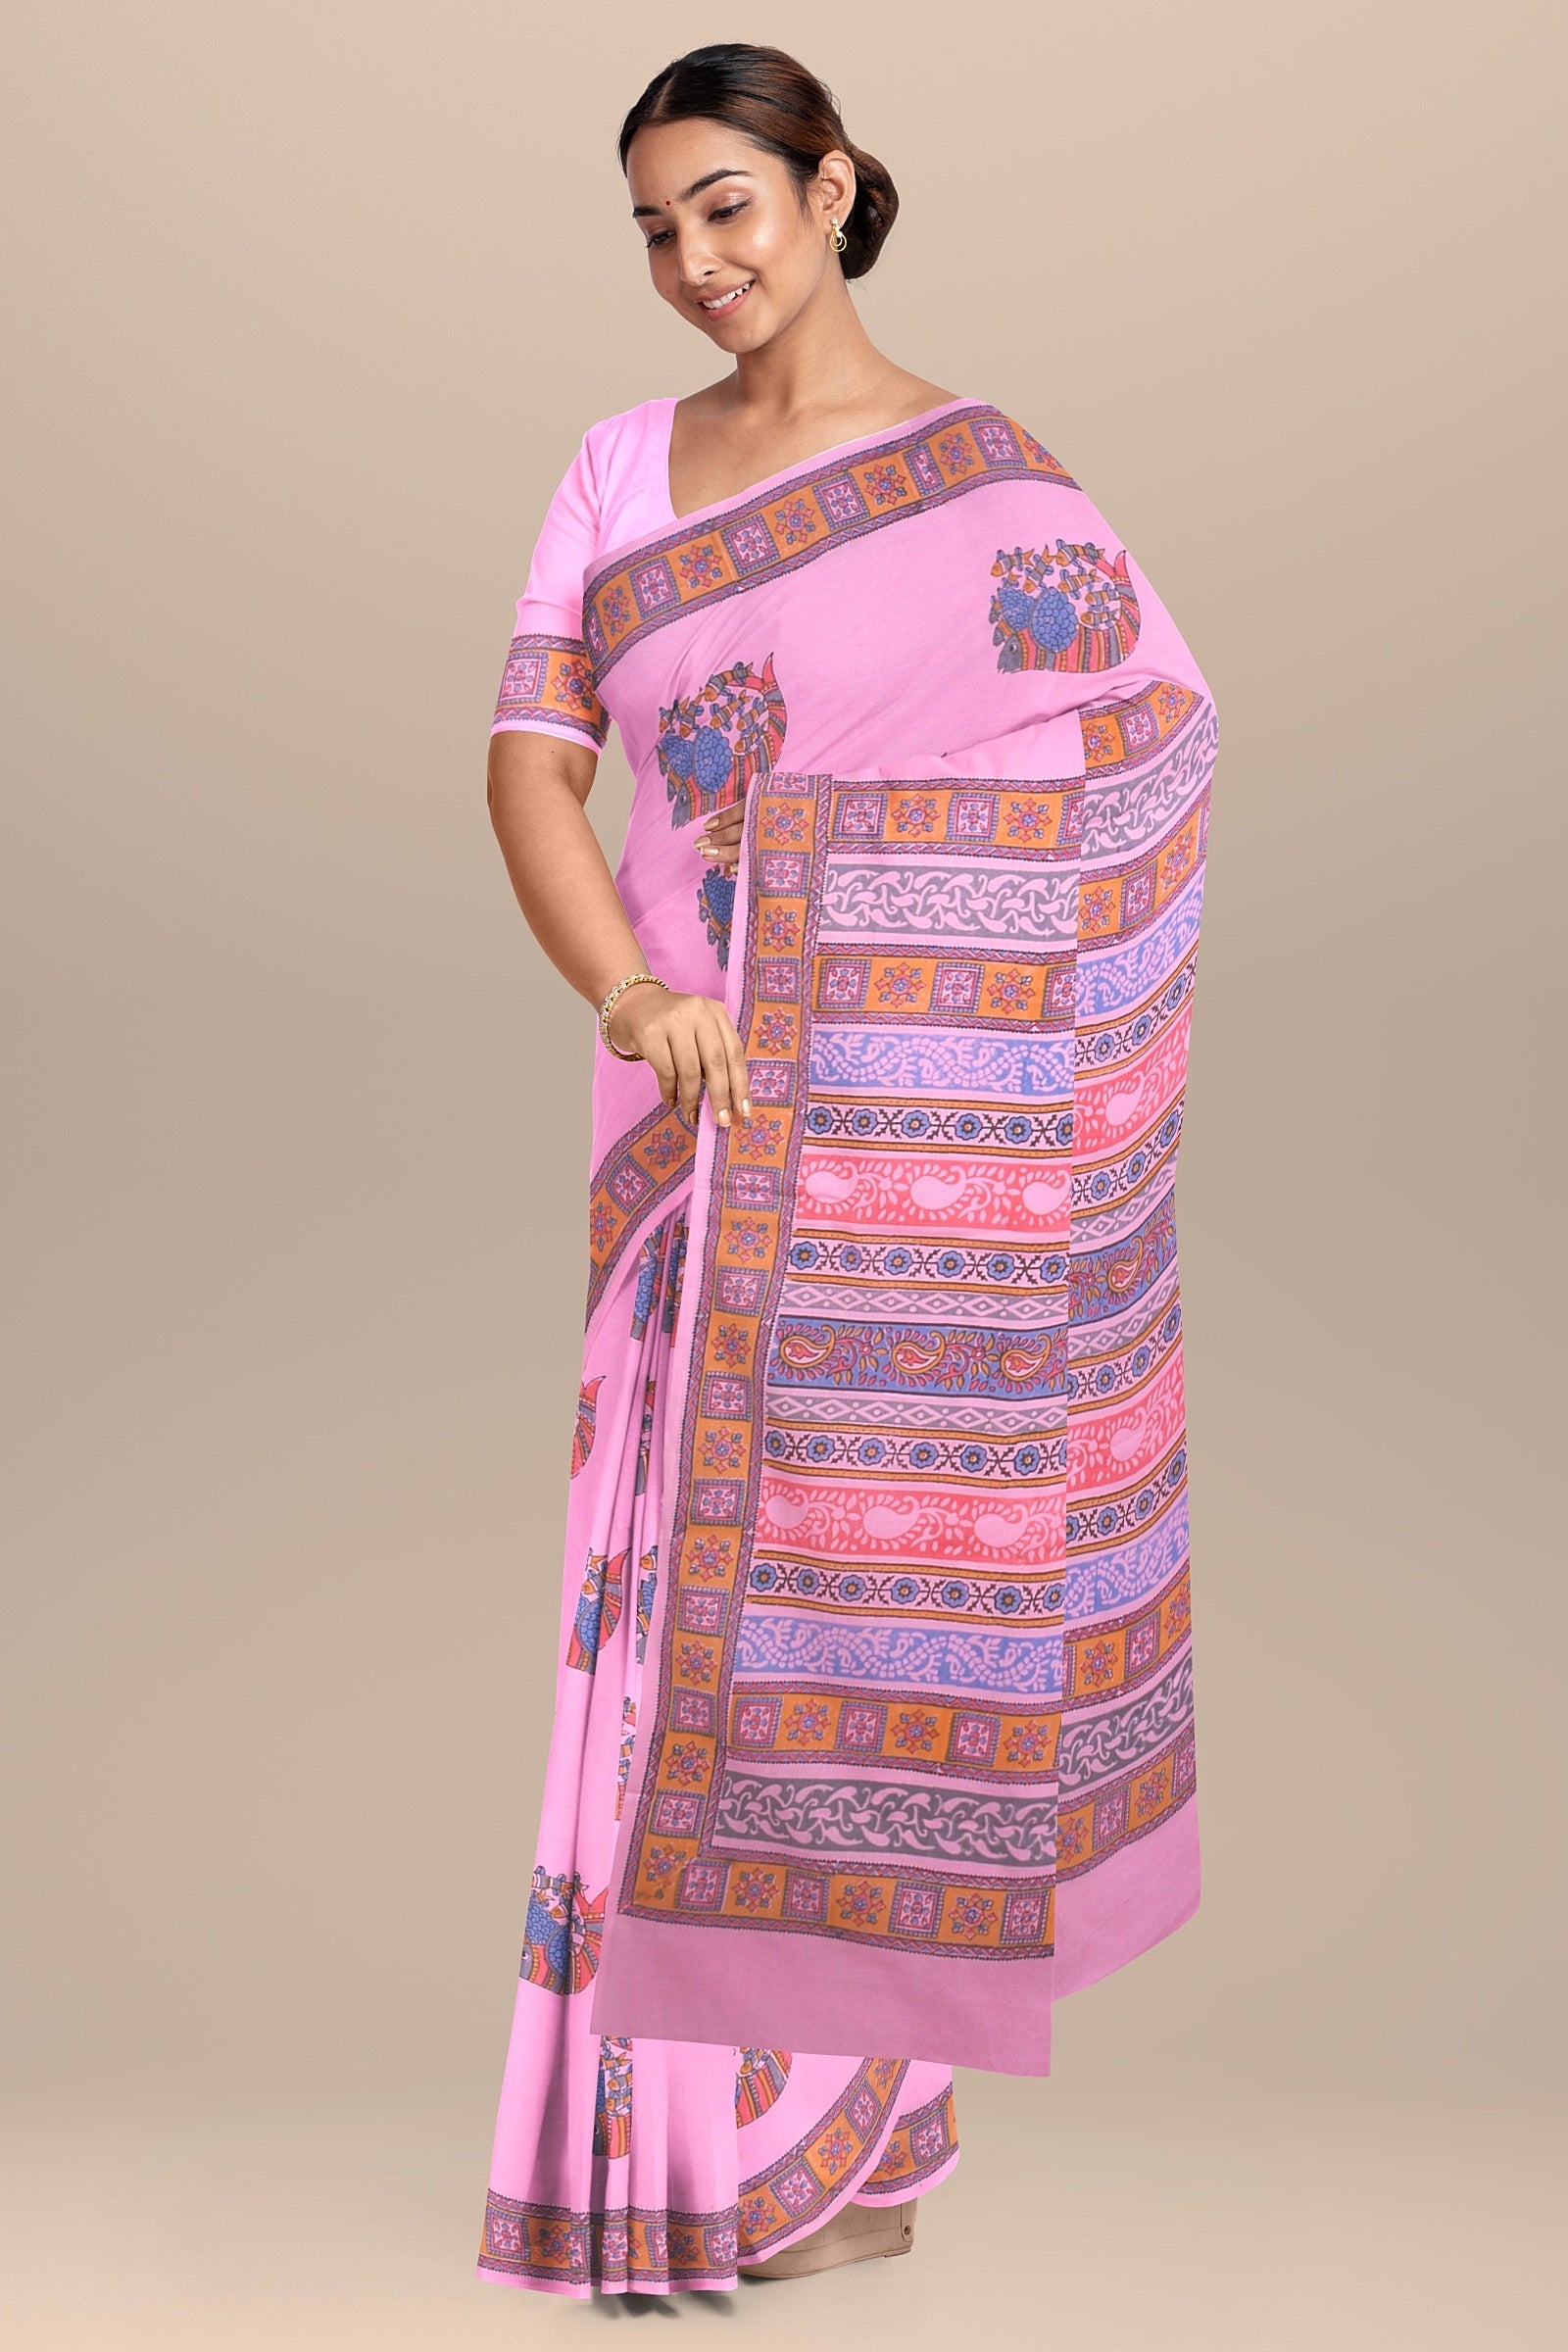 Chhipa Hand Block Printed Baby Pink Color Malmal Cotton Saree With Multicolor Gond Fish Motif SKU-AS10034 - Bhartiya Shilp